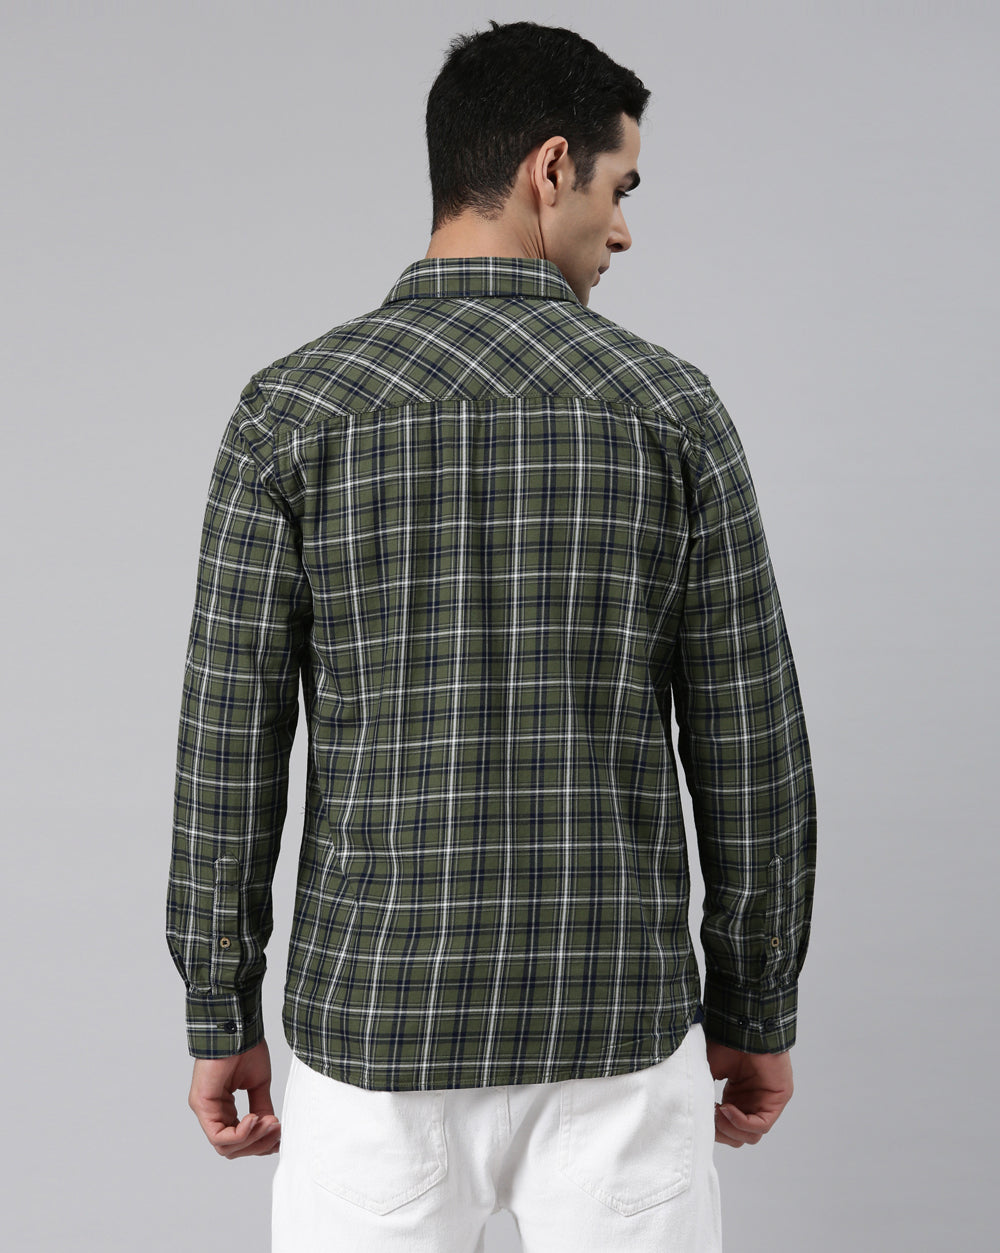 Swing Forever Olive Checkered Shirt for Men 